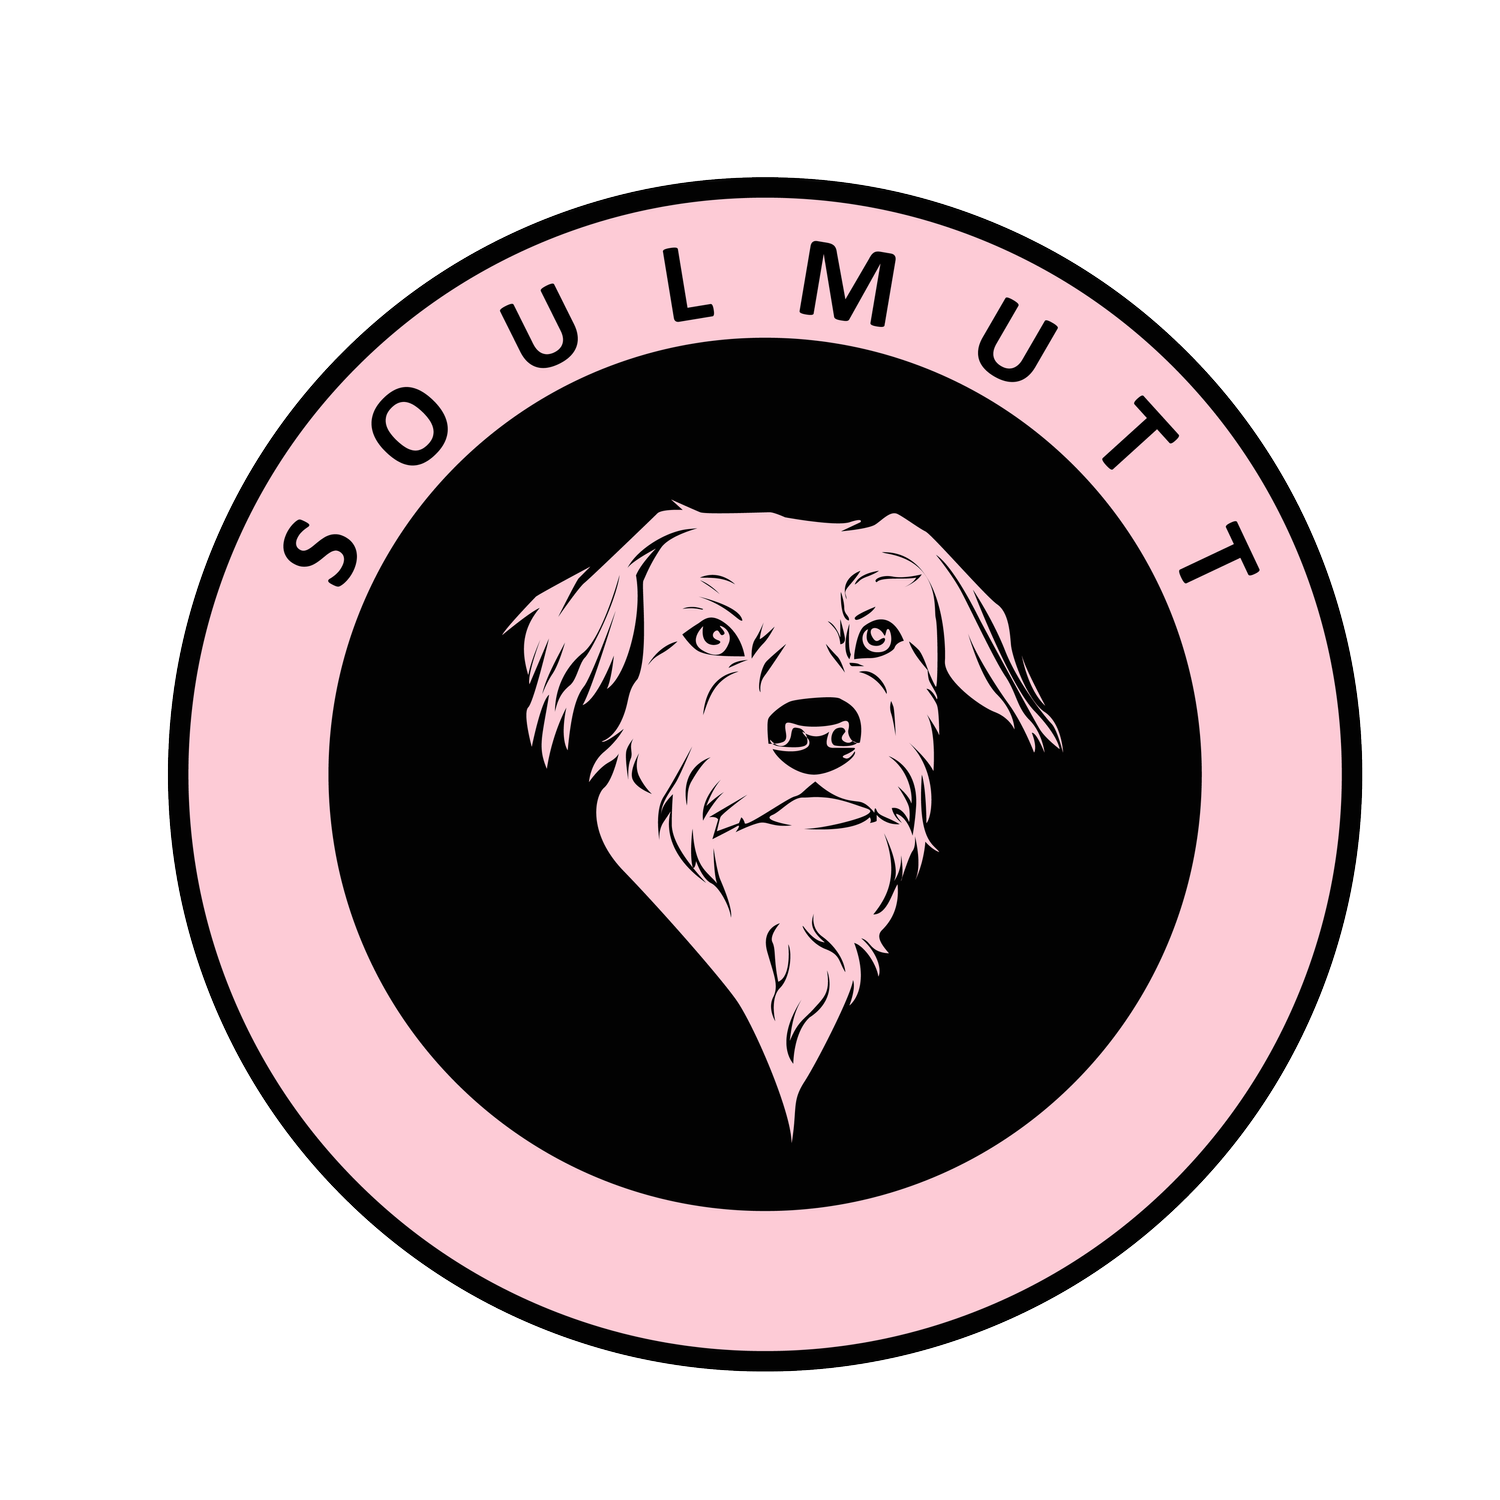 SoulMutt